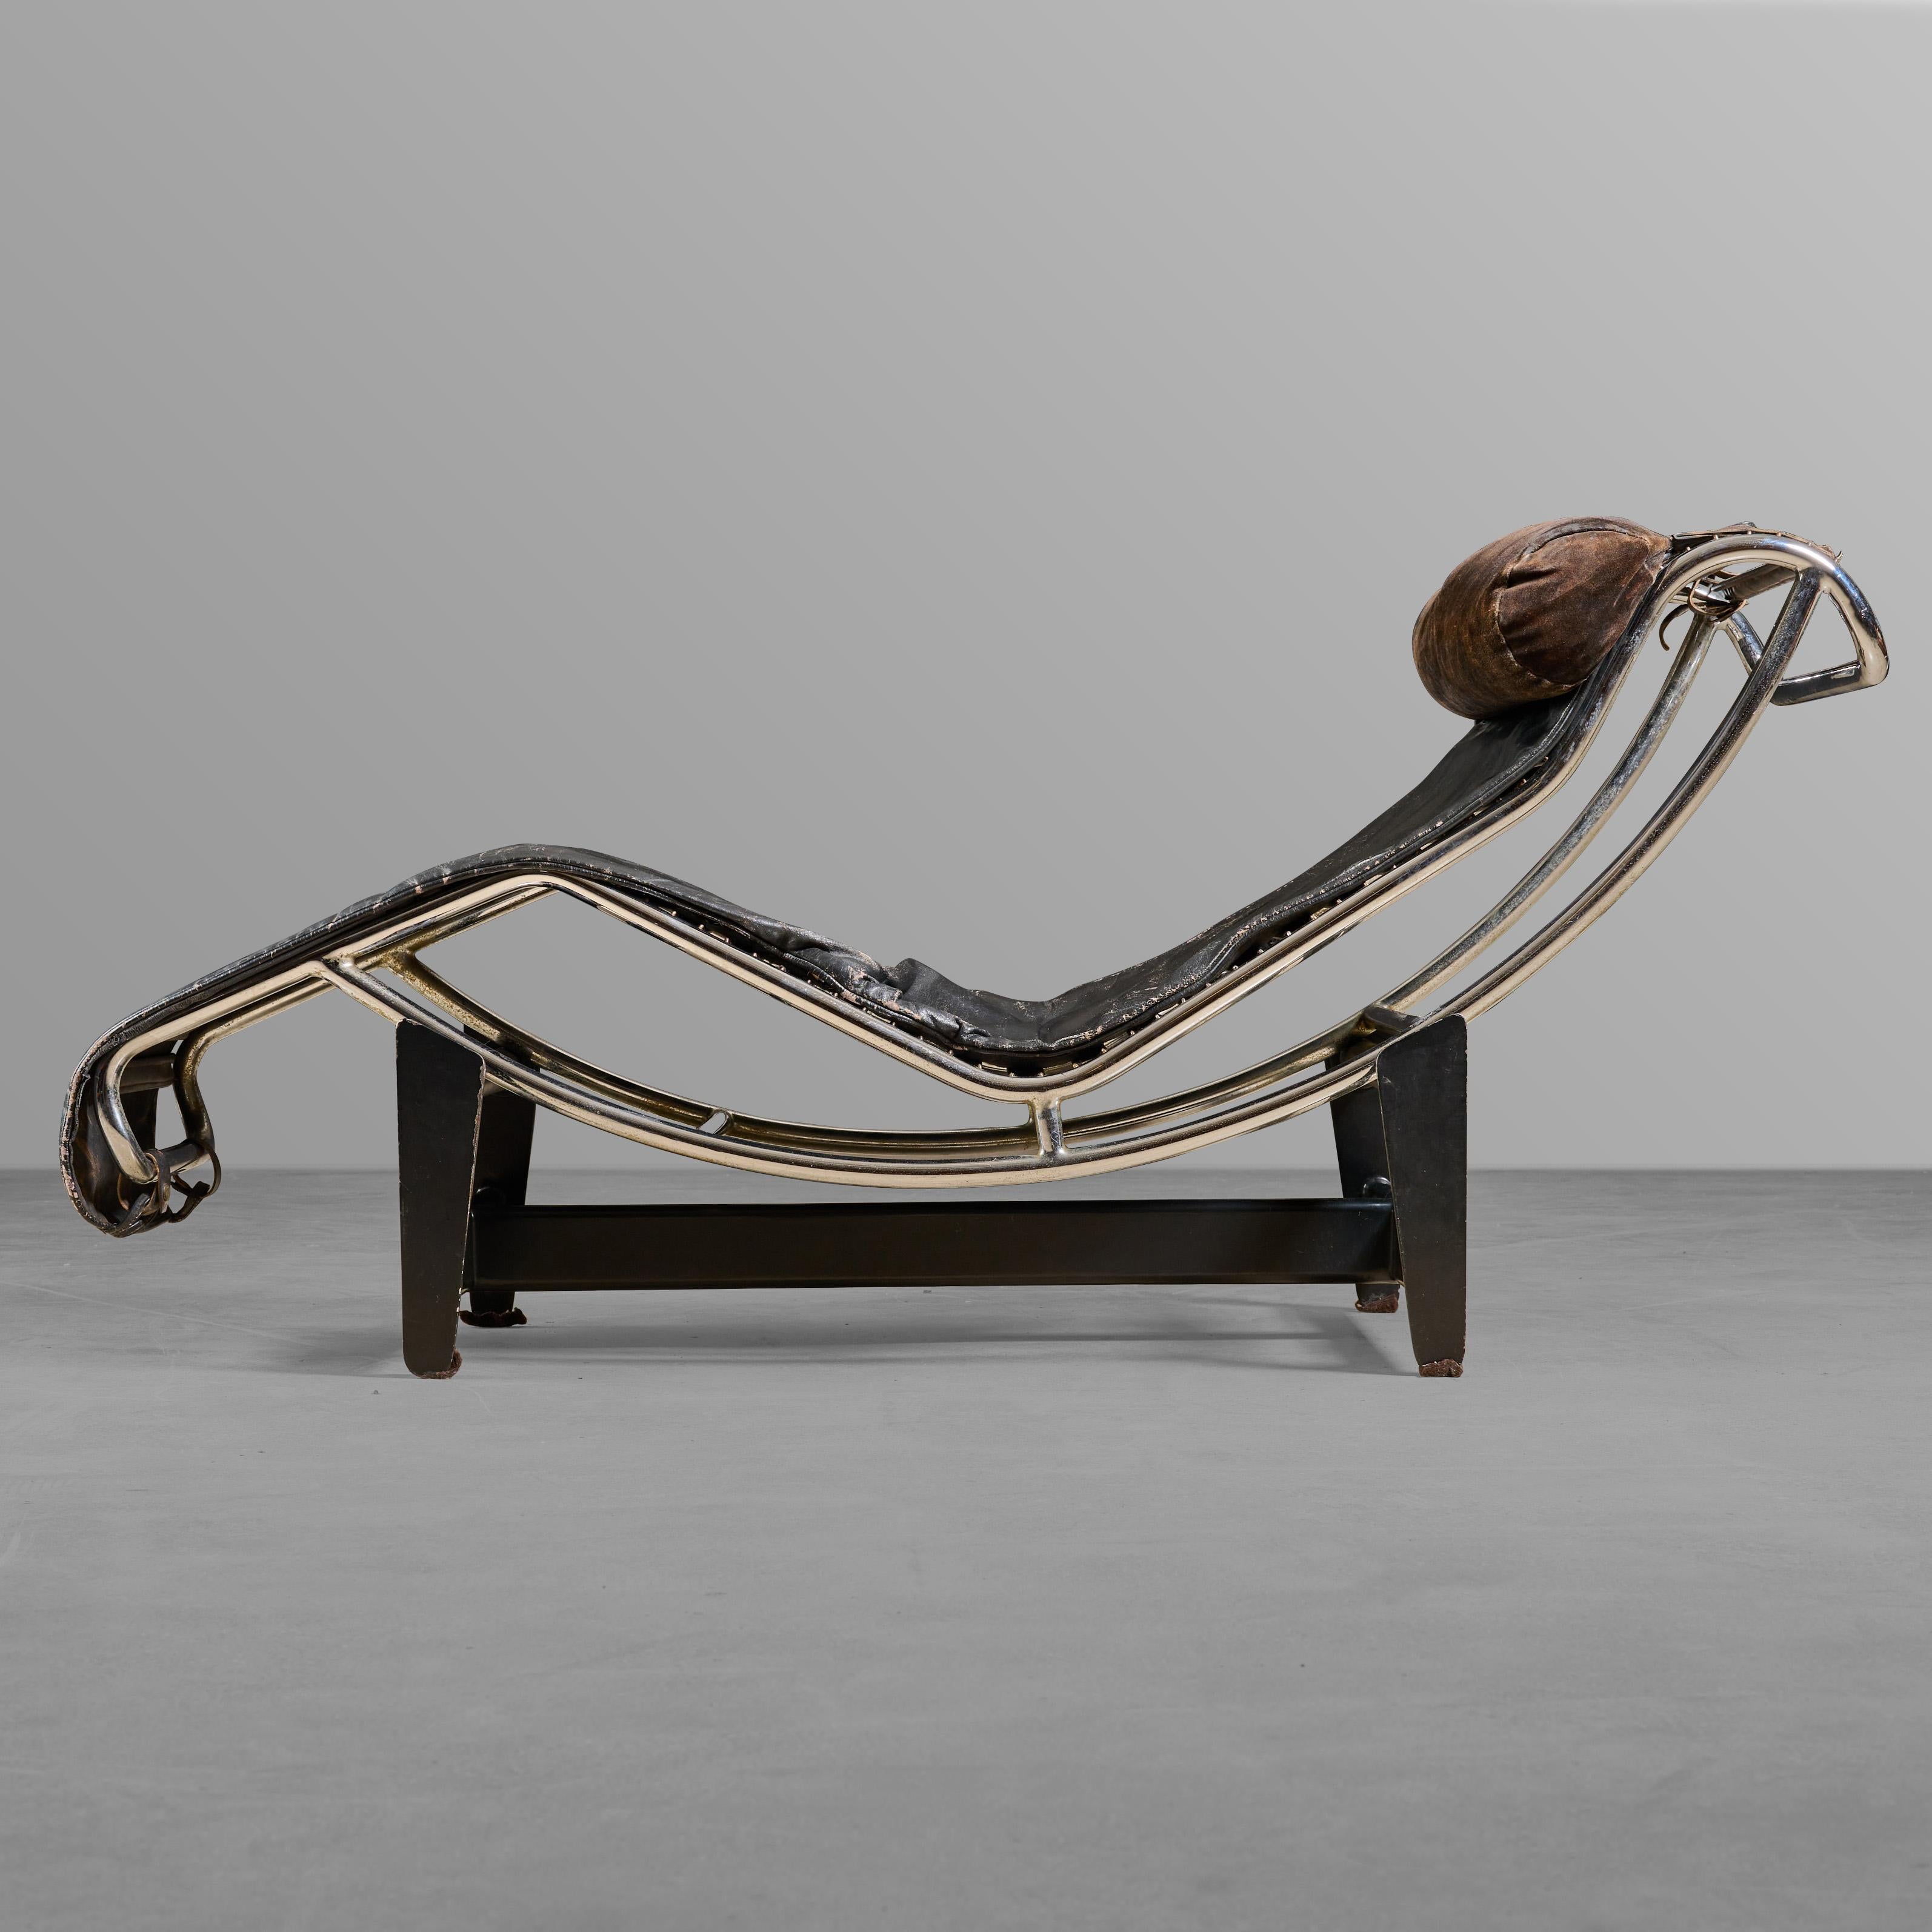 Chaise longue en chrome et cuir sur base de fer. Conçu par Le Corbusier. Fantastique.

